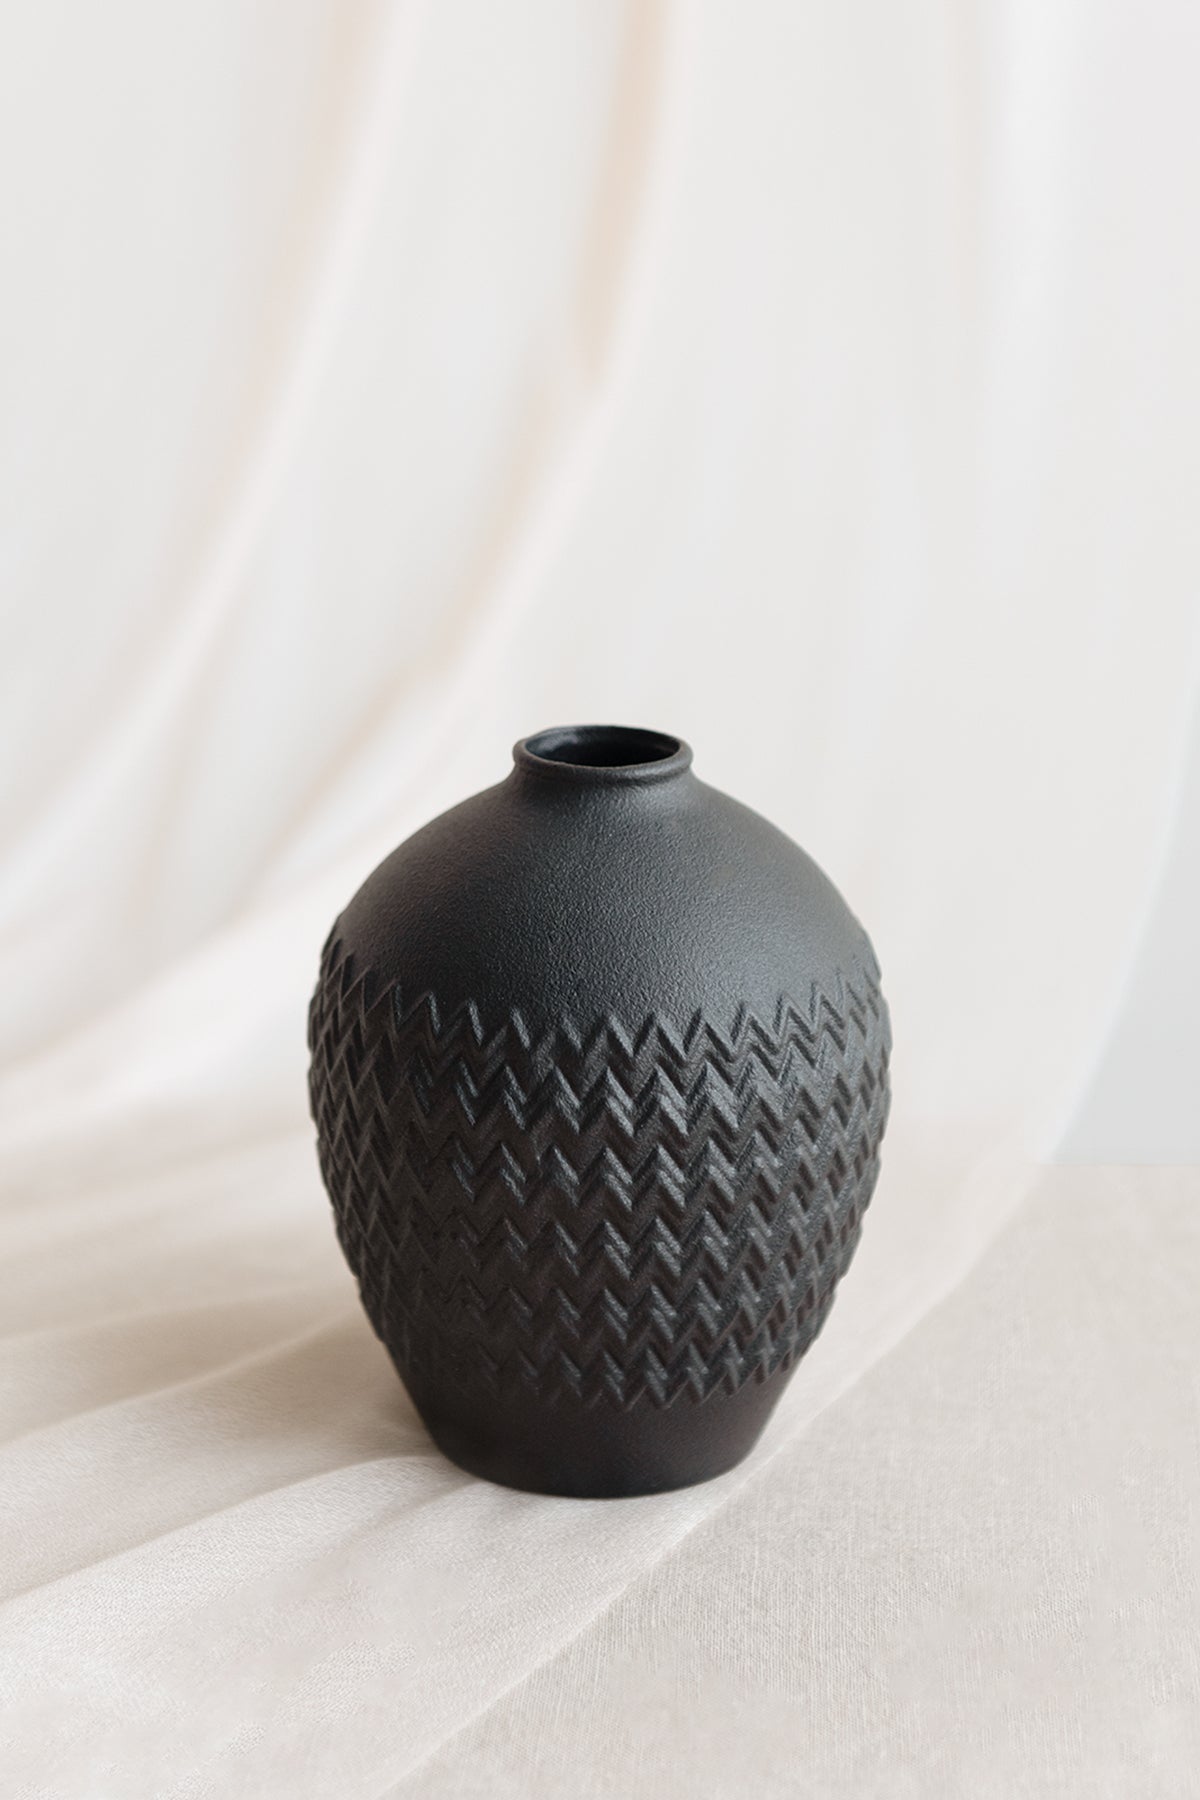 Embossed Vintage Vase in Moody Burgundy & Black